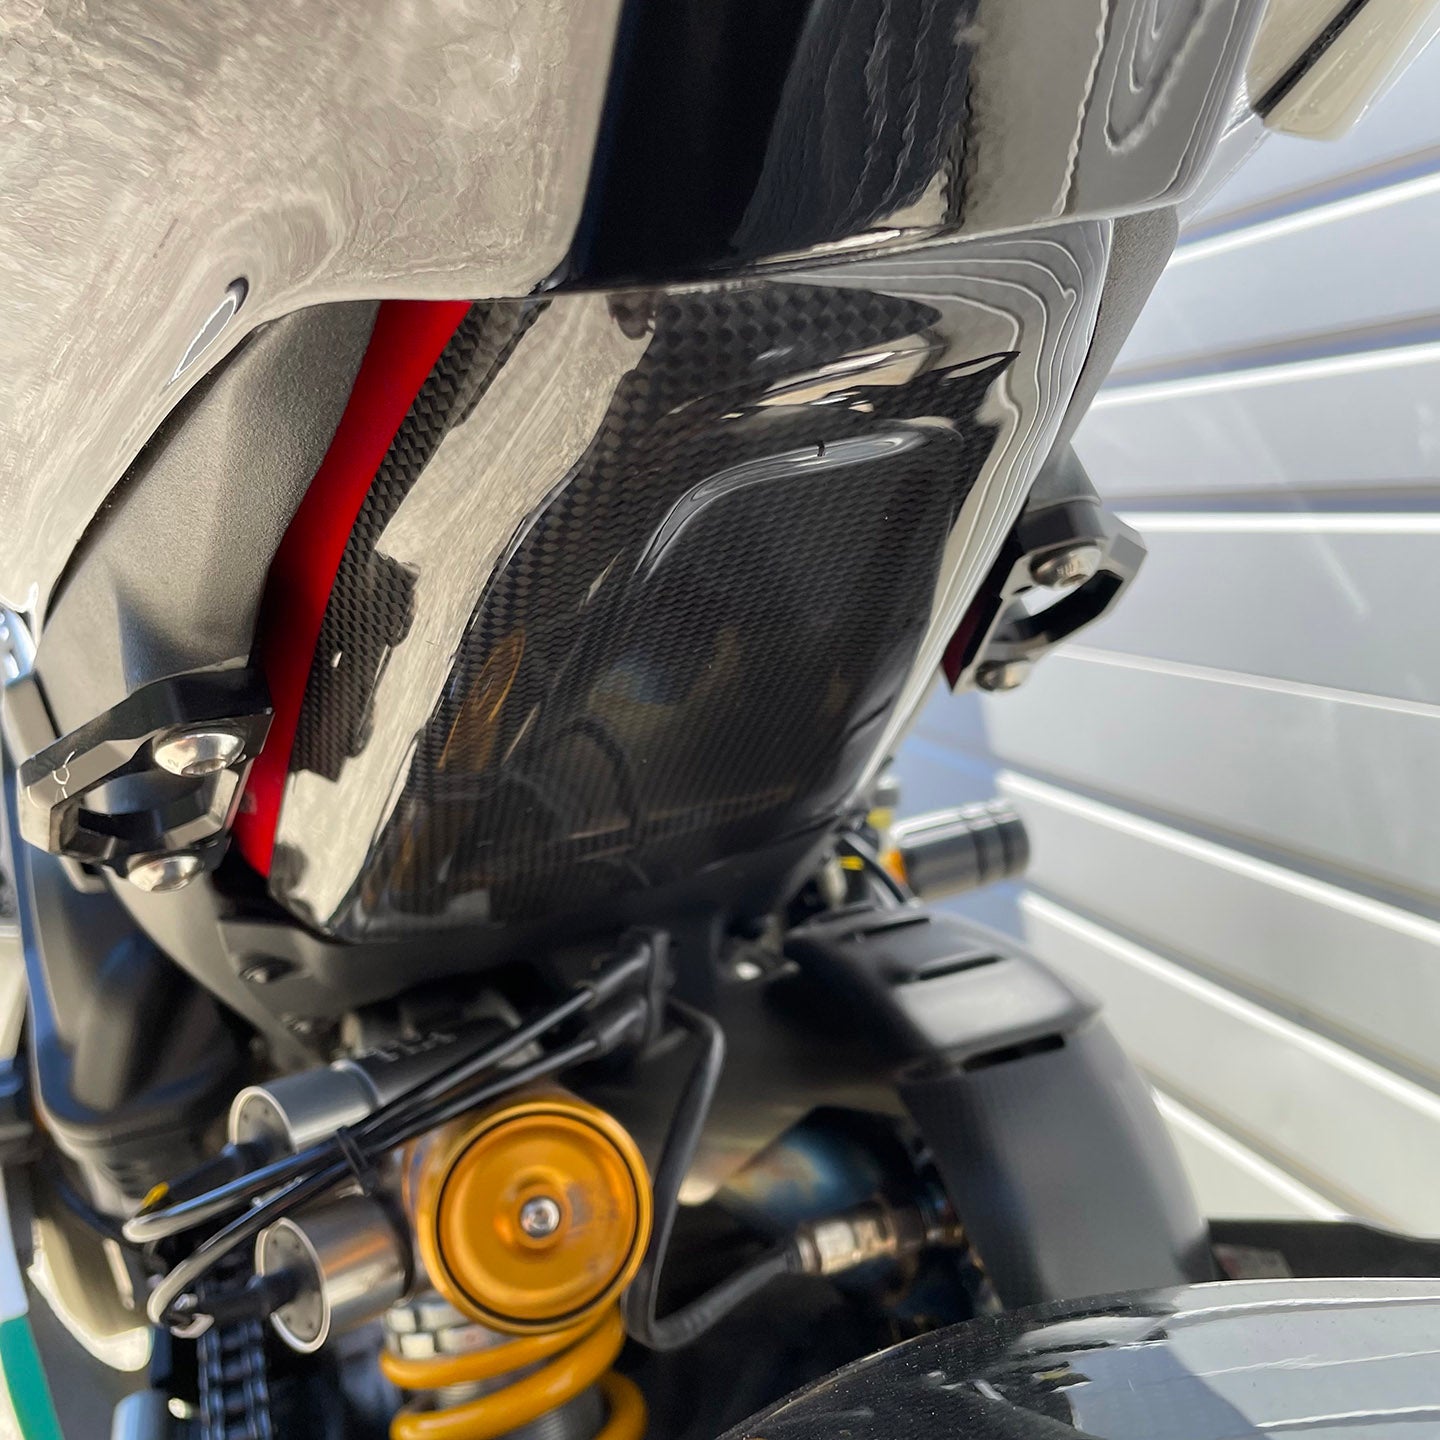 2019 Ducati Panigale V4S Full Akrapovic (1,683 Miles)